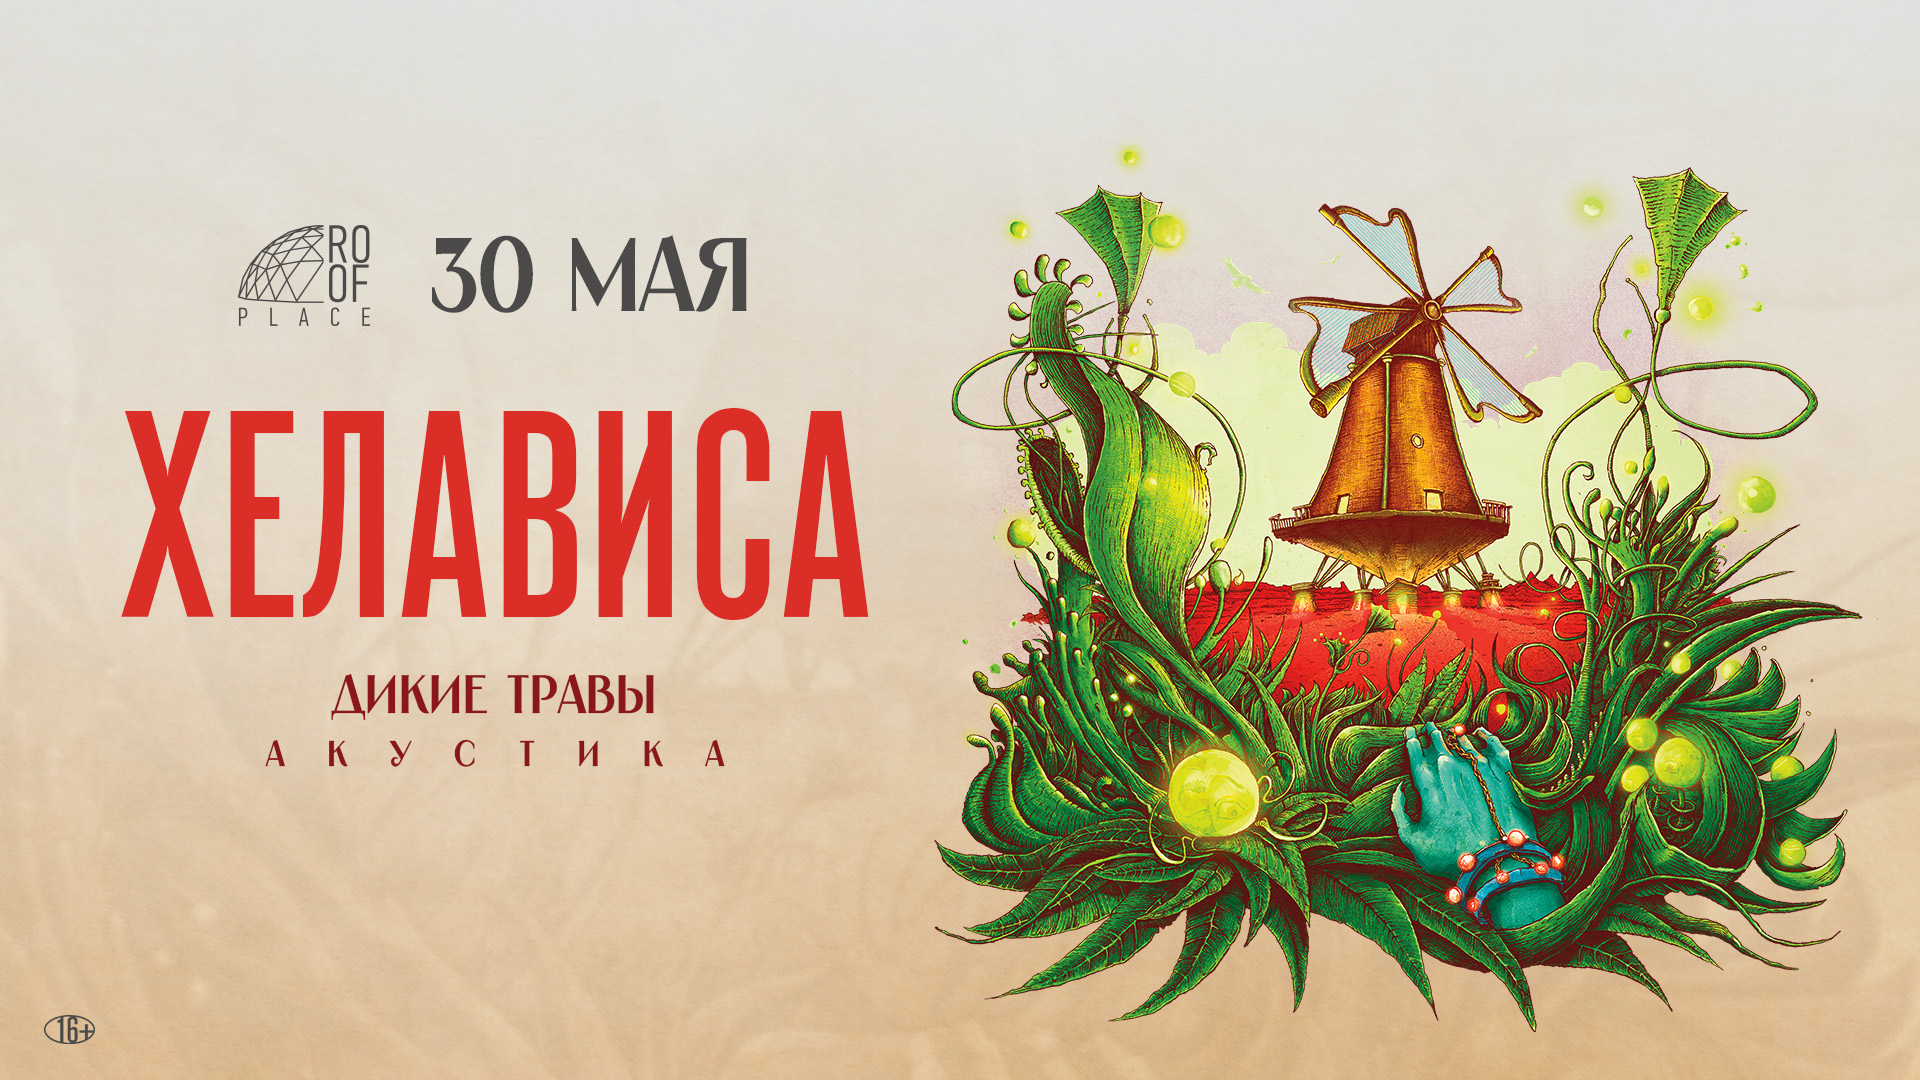 30 мая Хелависа даст акустический концерт на крыше ROOF PLACE